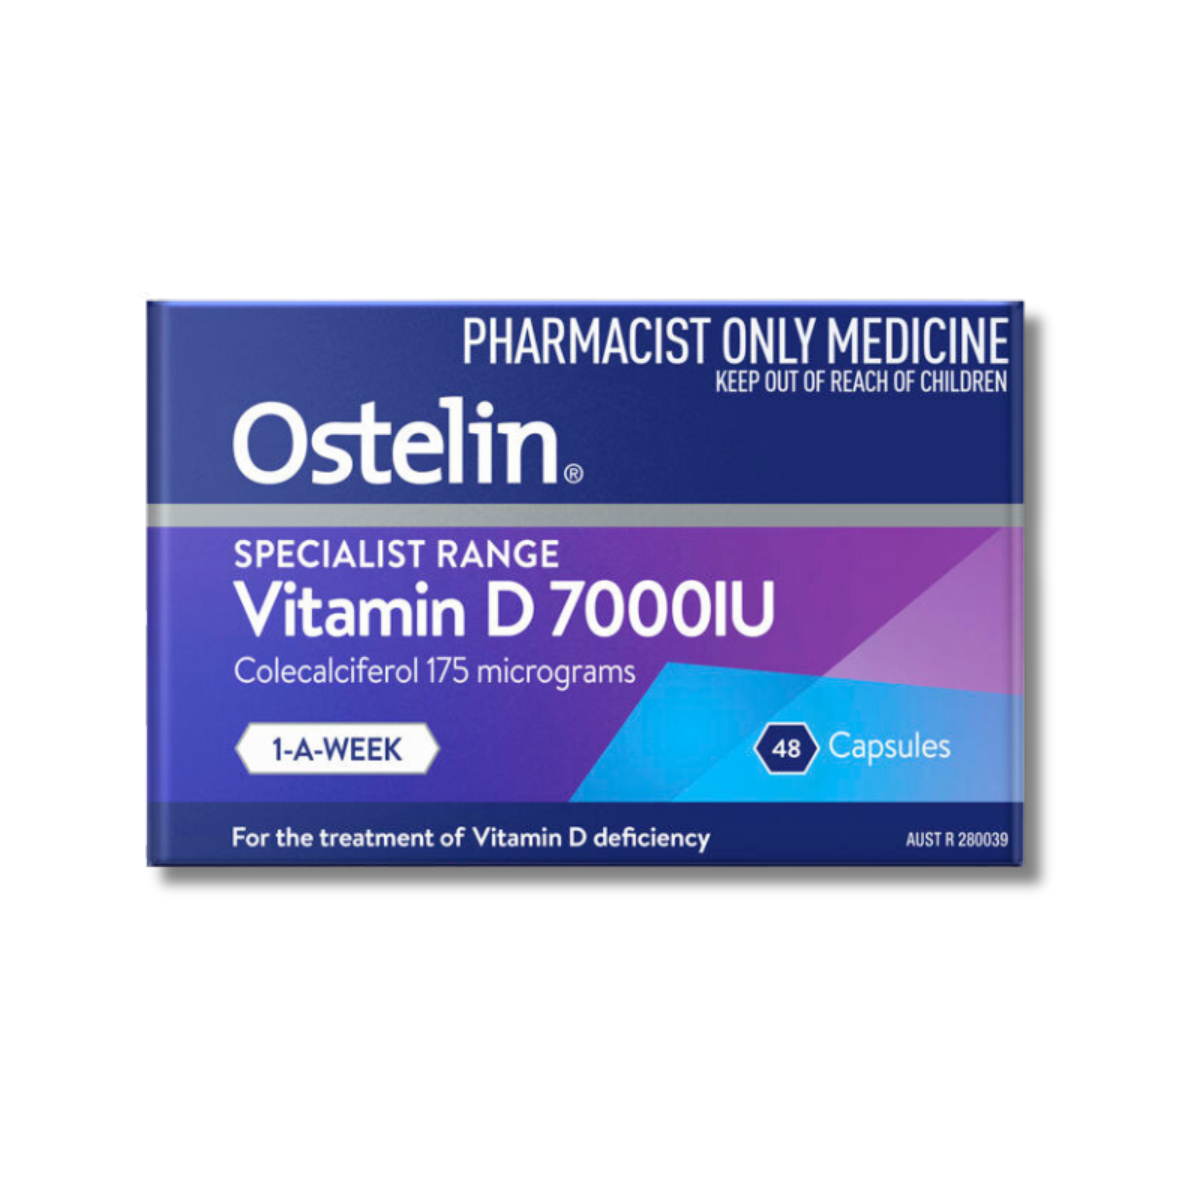 Ostelin Specialist Range Vitamin D 7000IU 45 Capsules